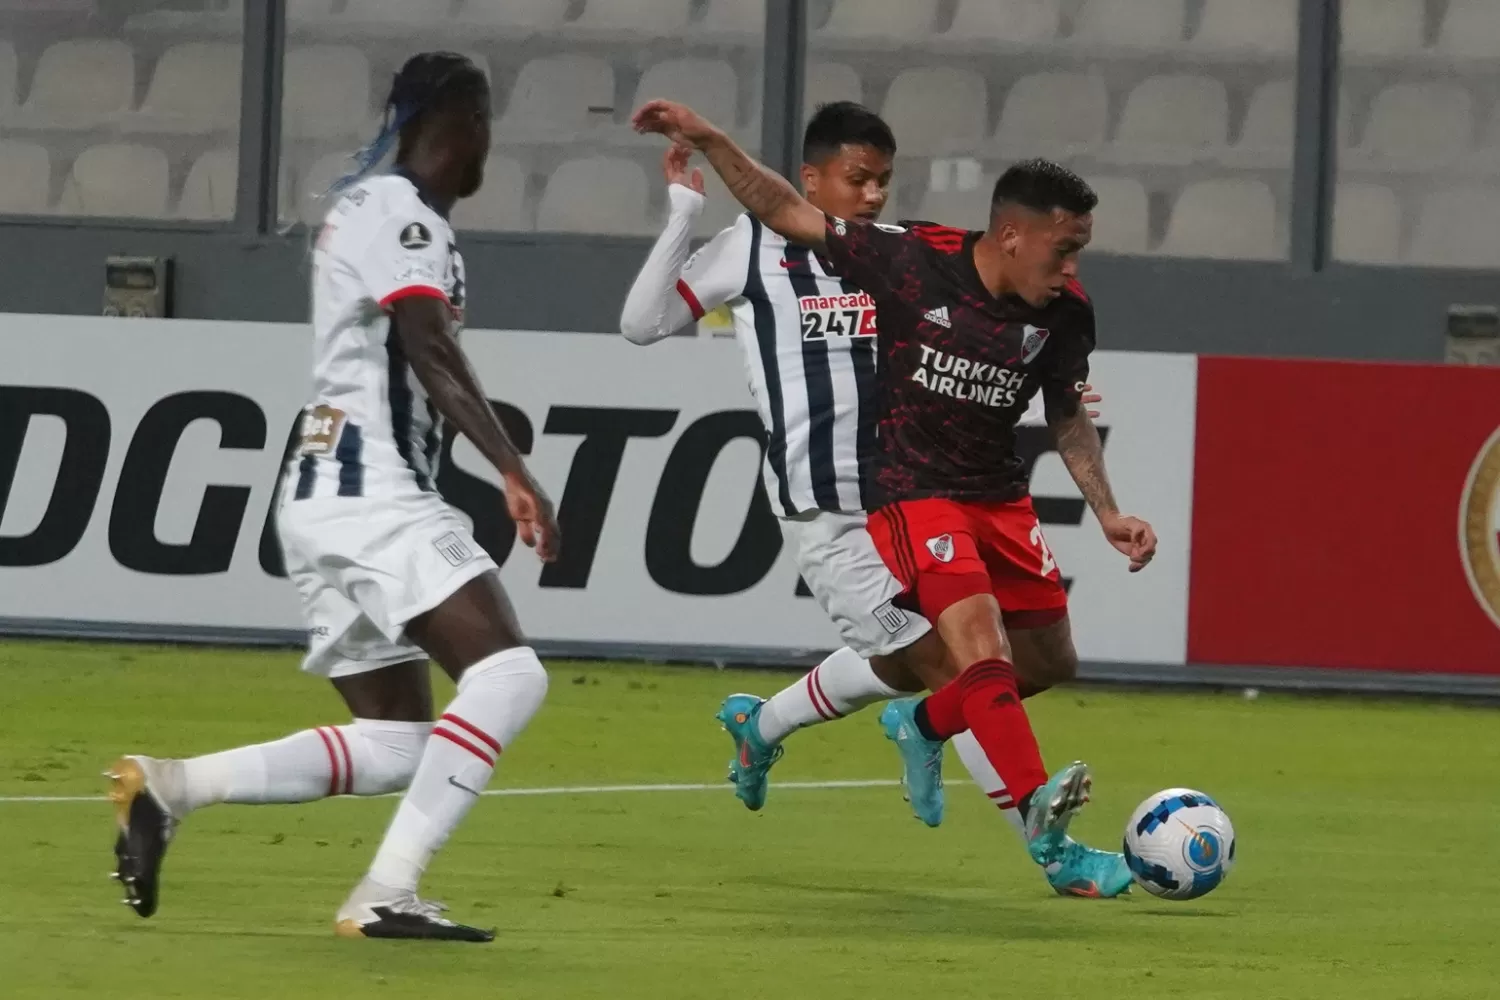 Con lo justo, River venció a Alianza Lima en Perú